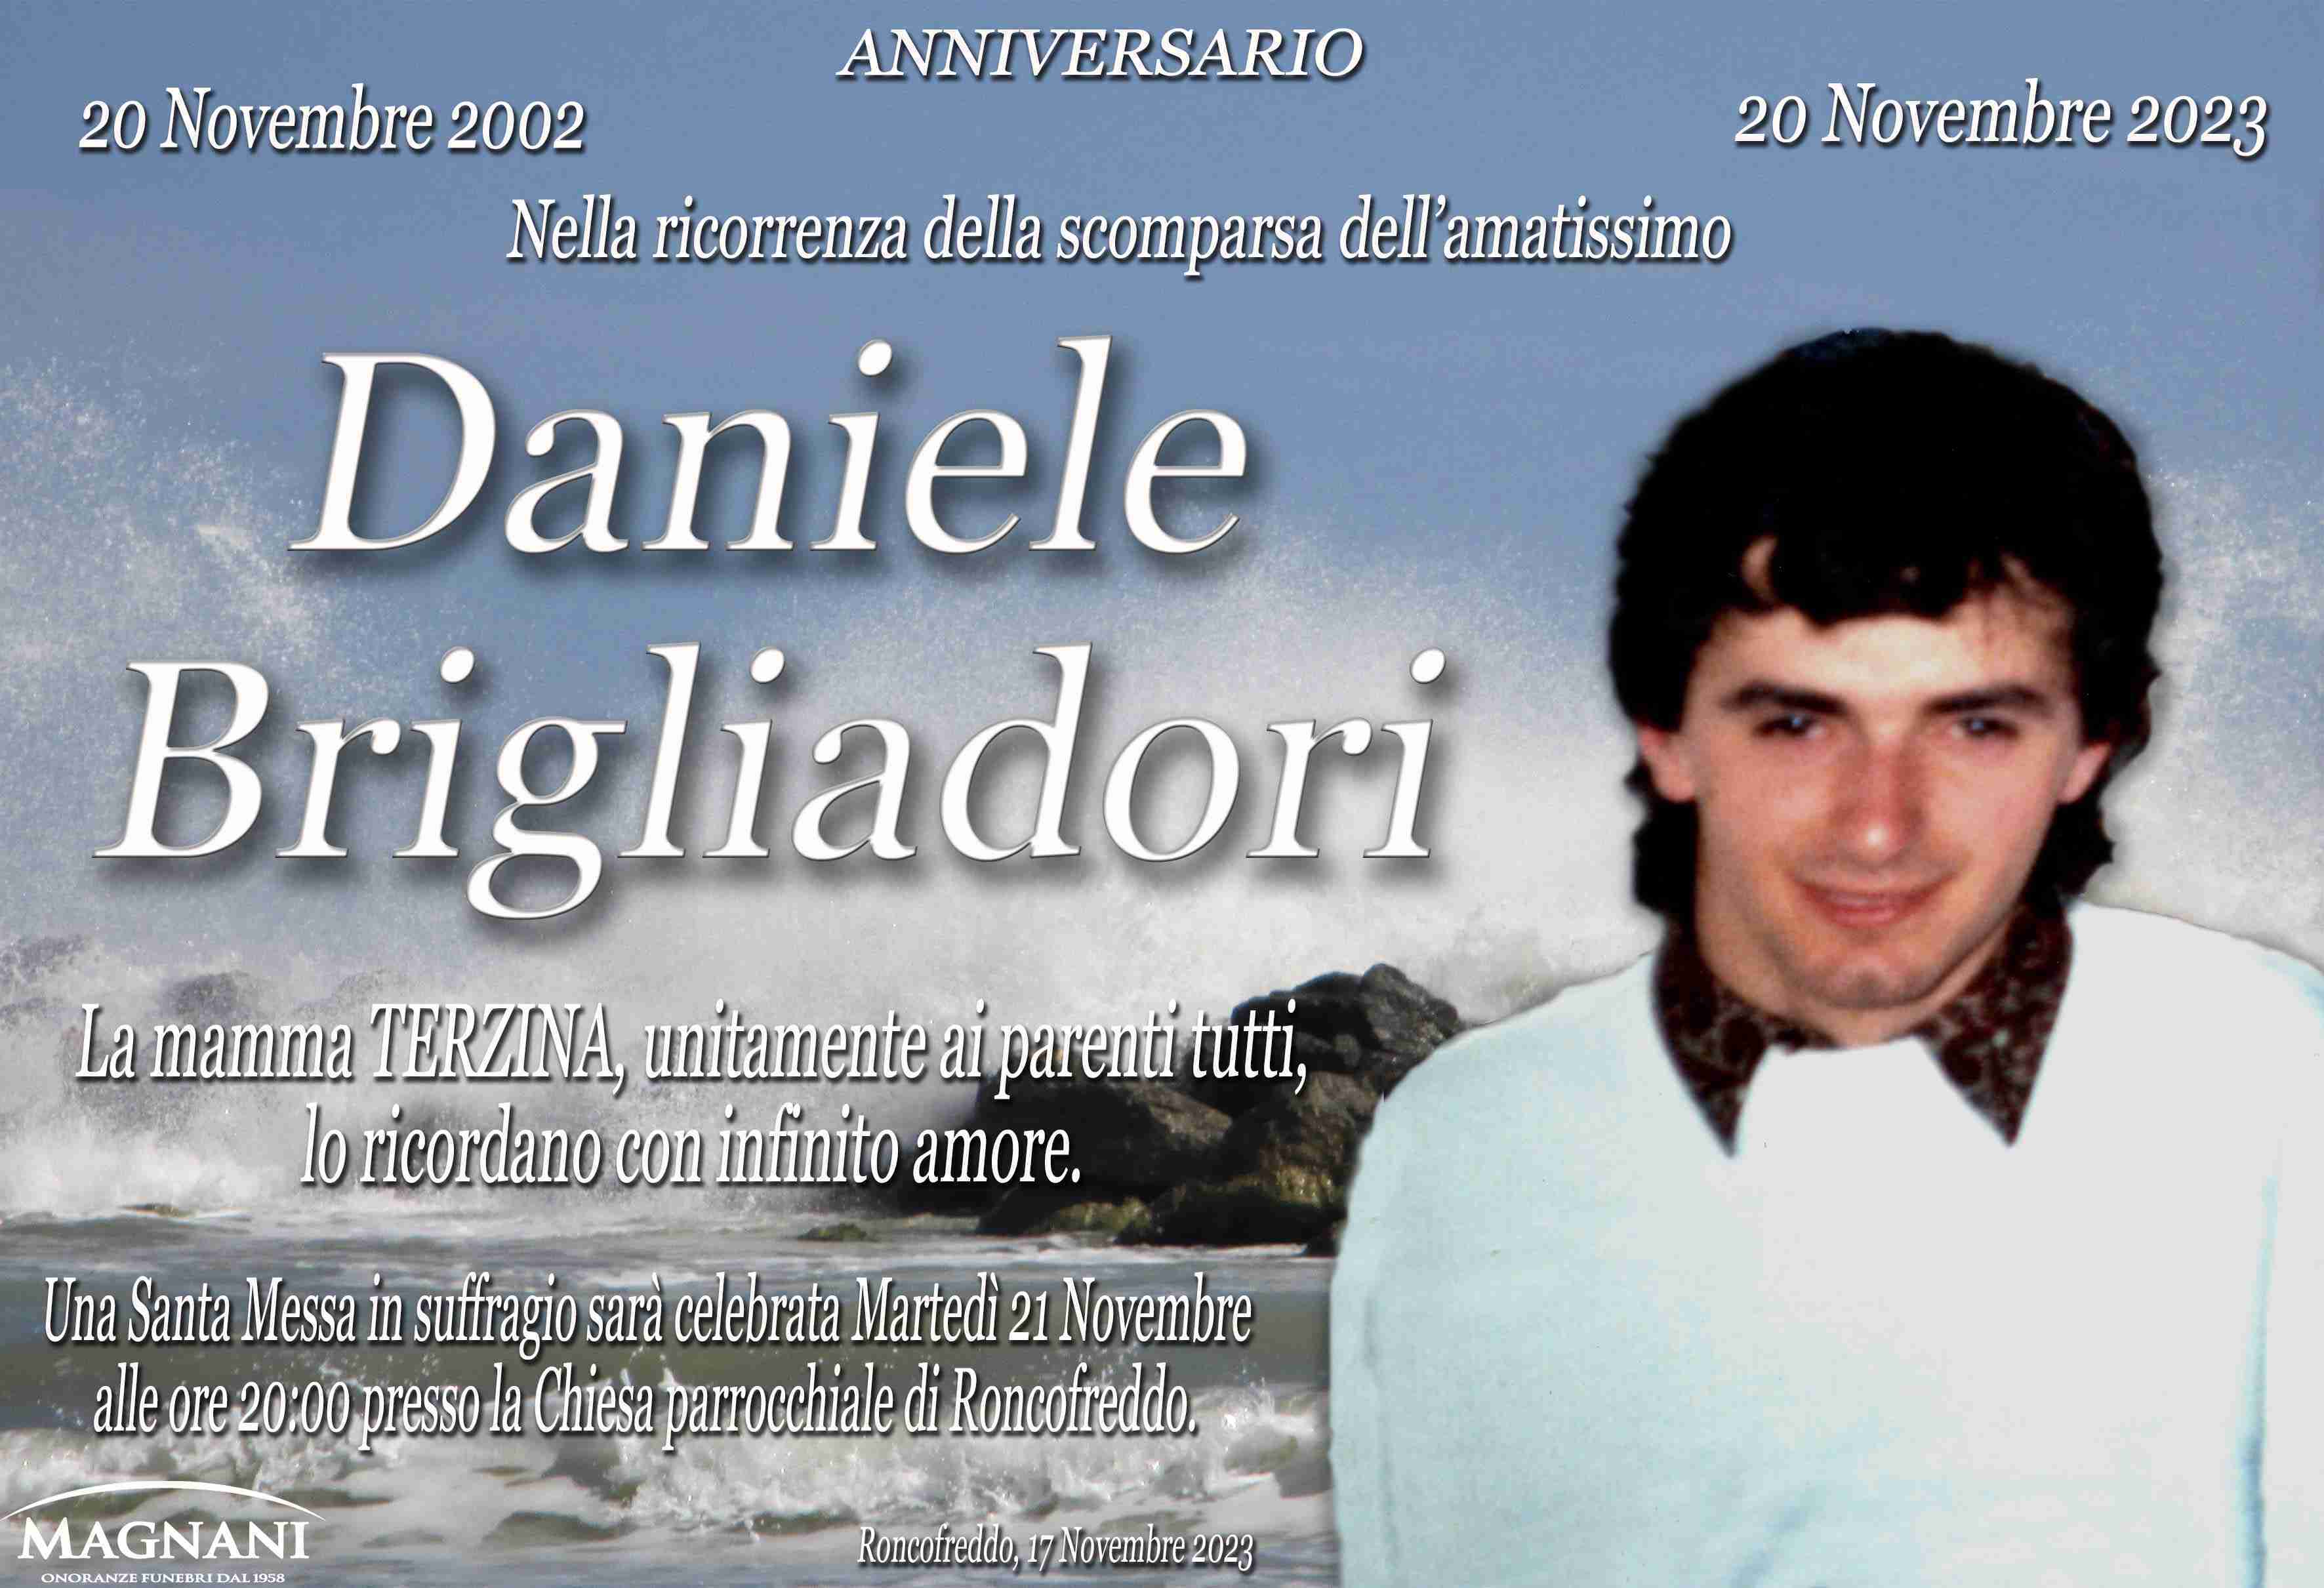 Daniele Brigliadori